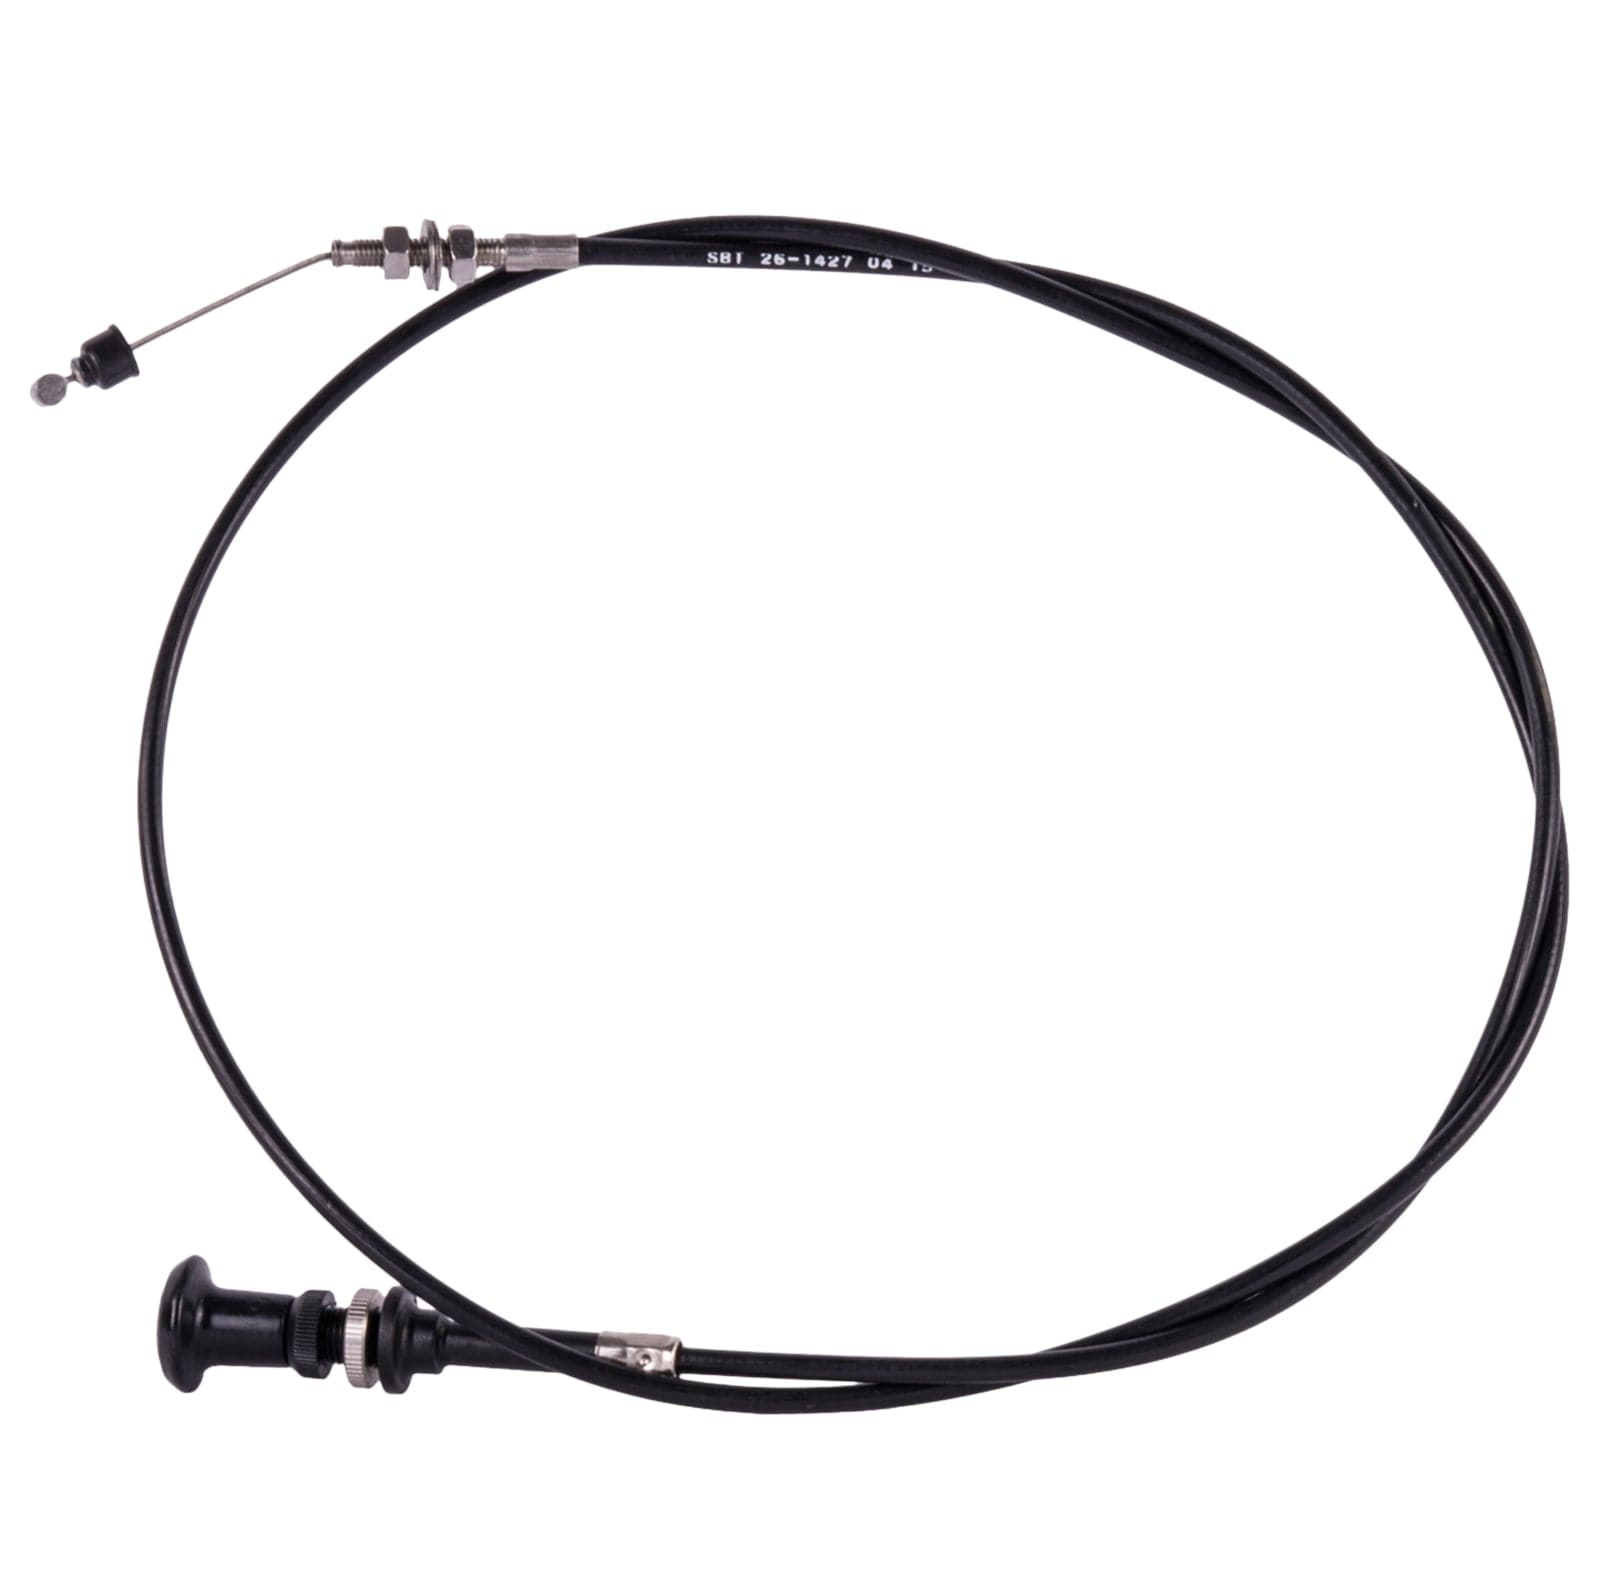 Yamaha Choke Cable XL 800 67A-67242-00-00 2000 2001